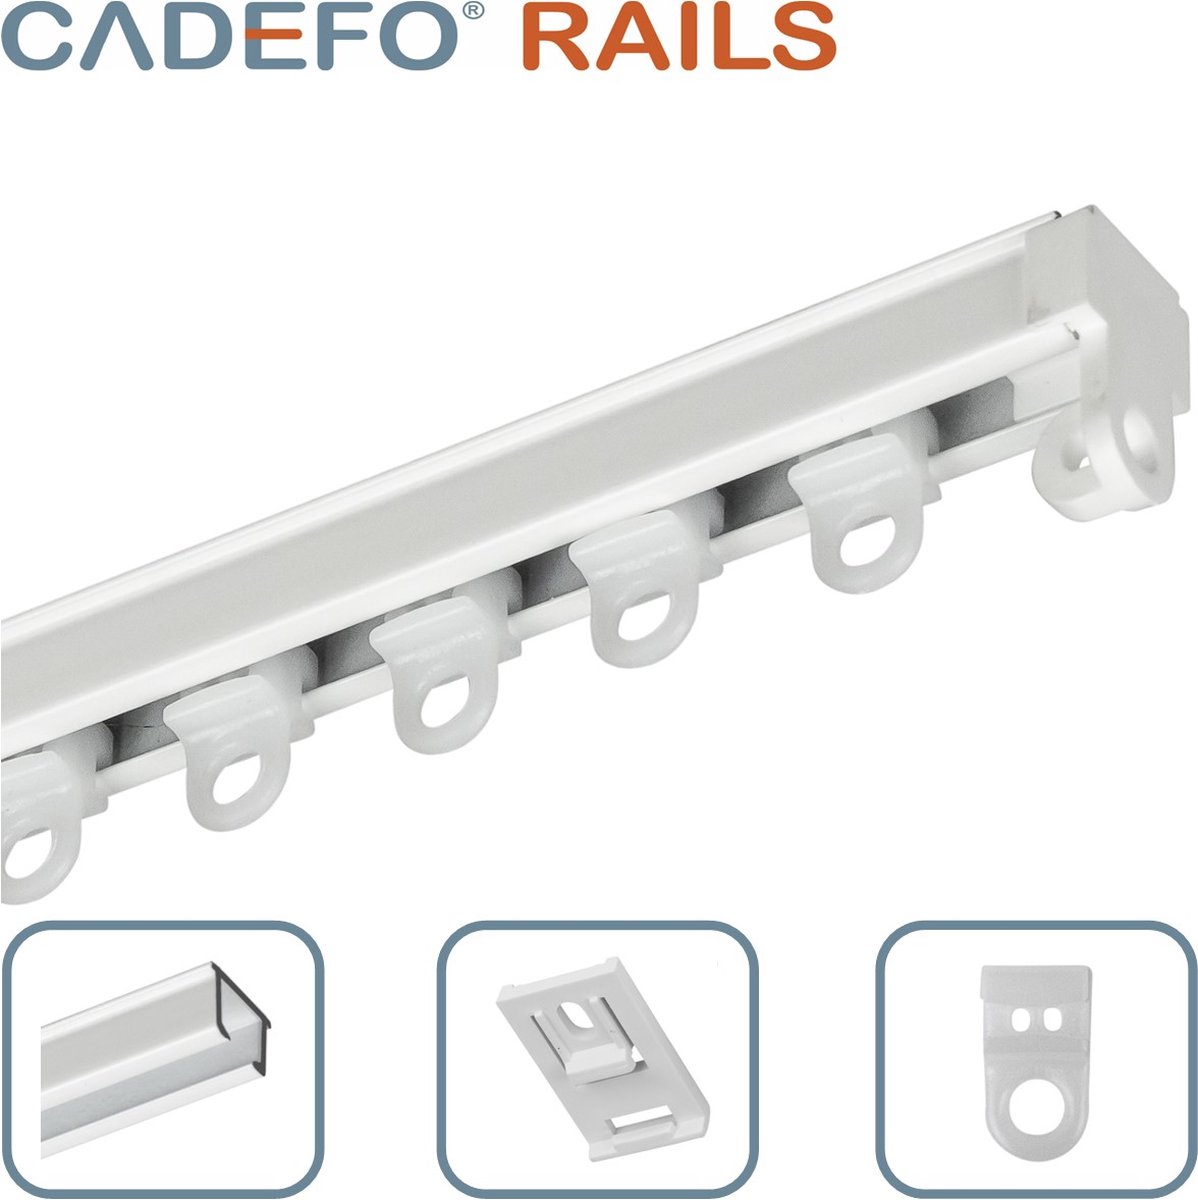 CADEFO RAILS (551 - 600 cm) Gordijnrails - Compleet op maat! - UIT 1 STUK - Leverbaar tot 6 meter - Plafondbevestiging - Lengte 587 cm